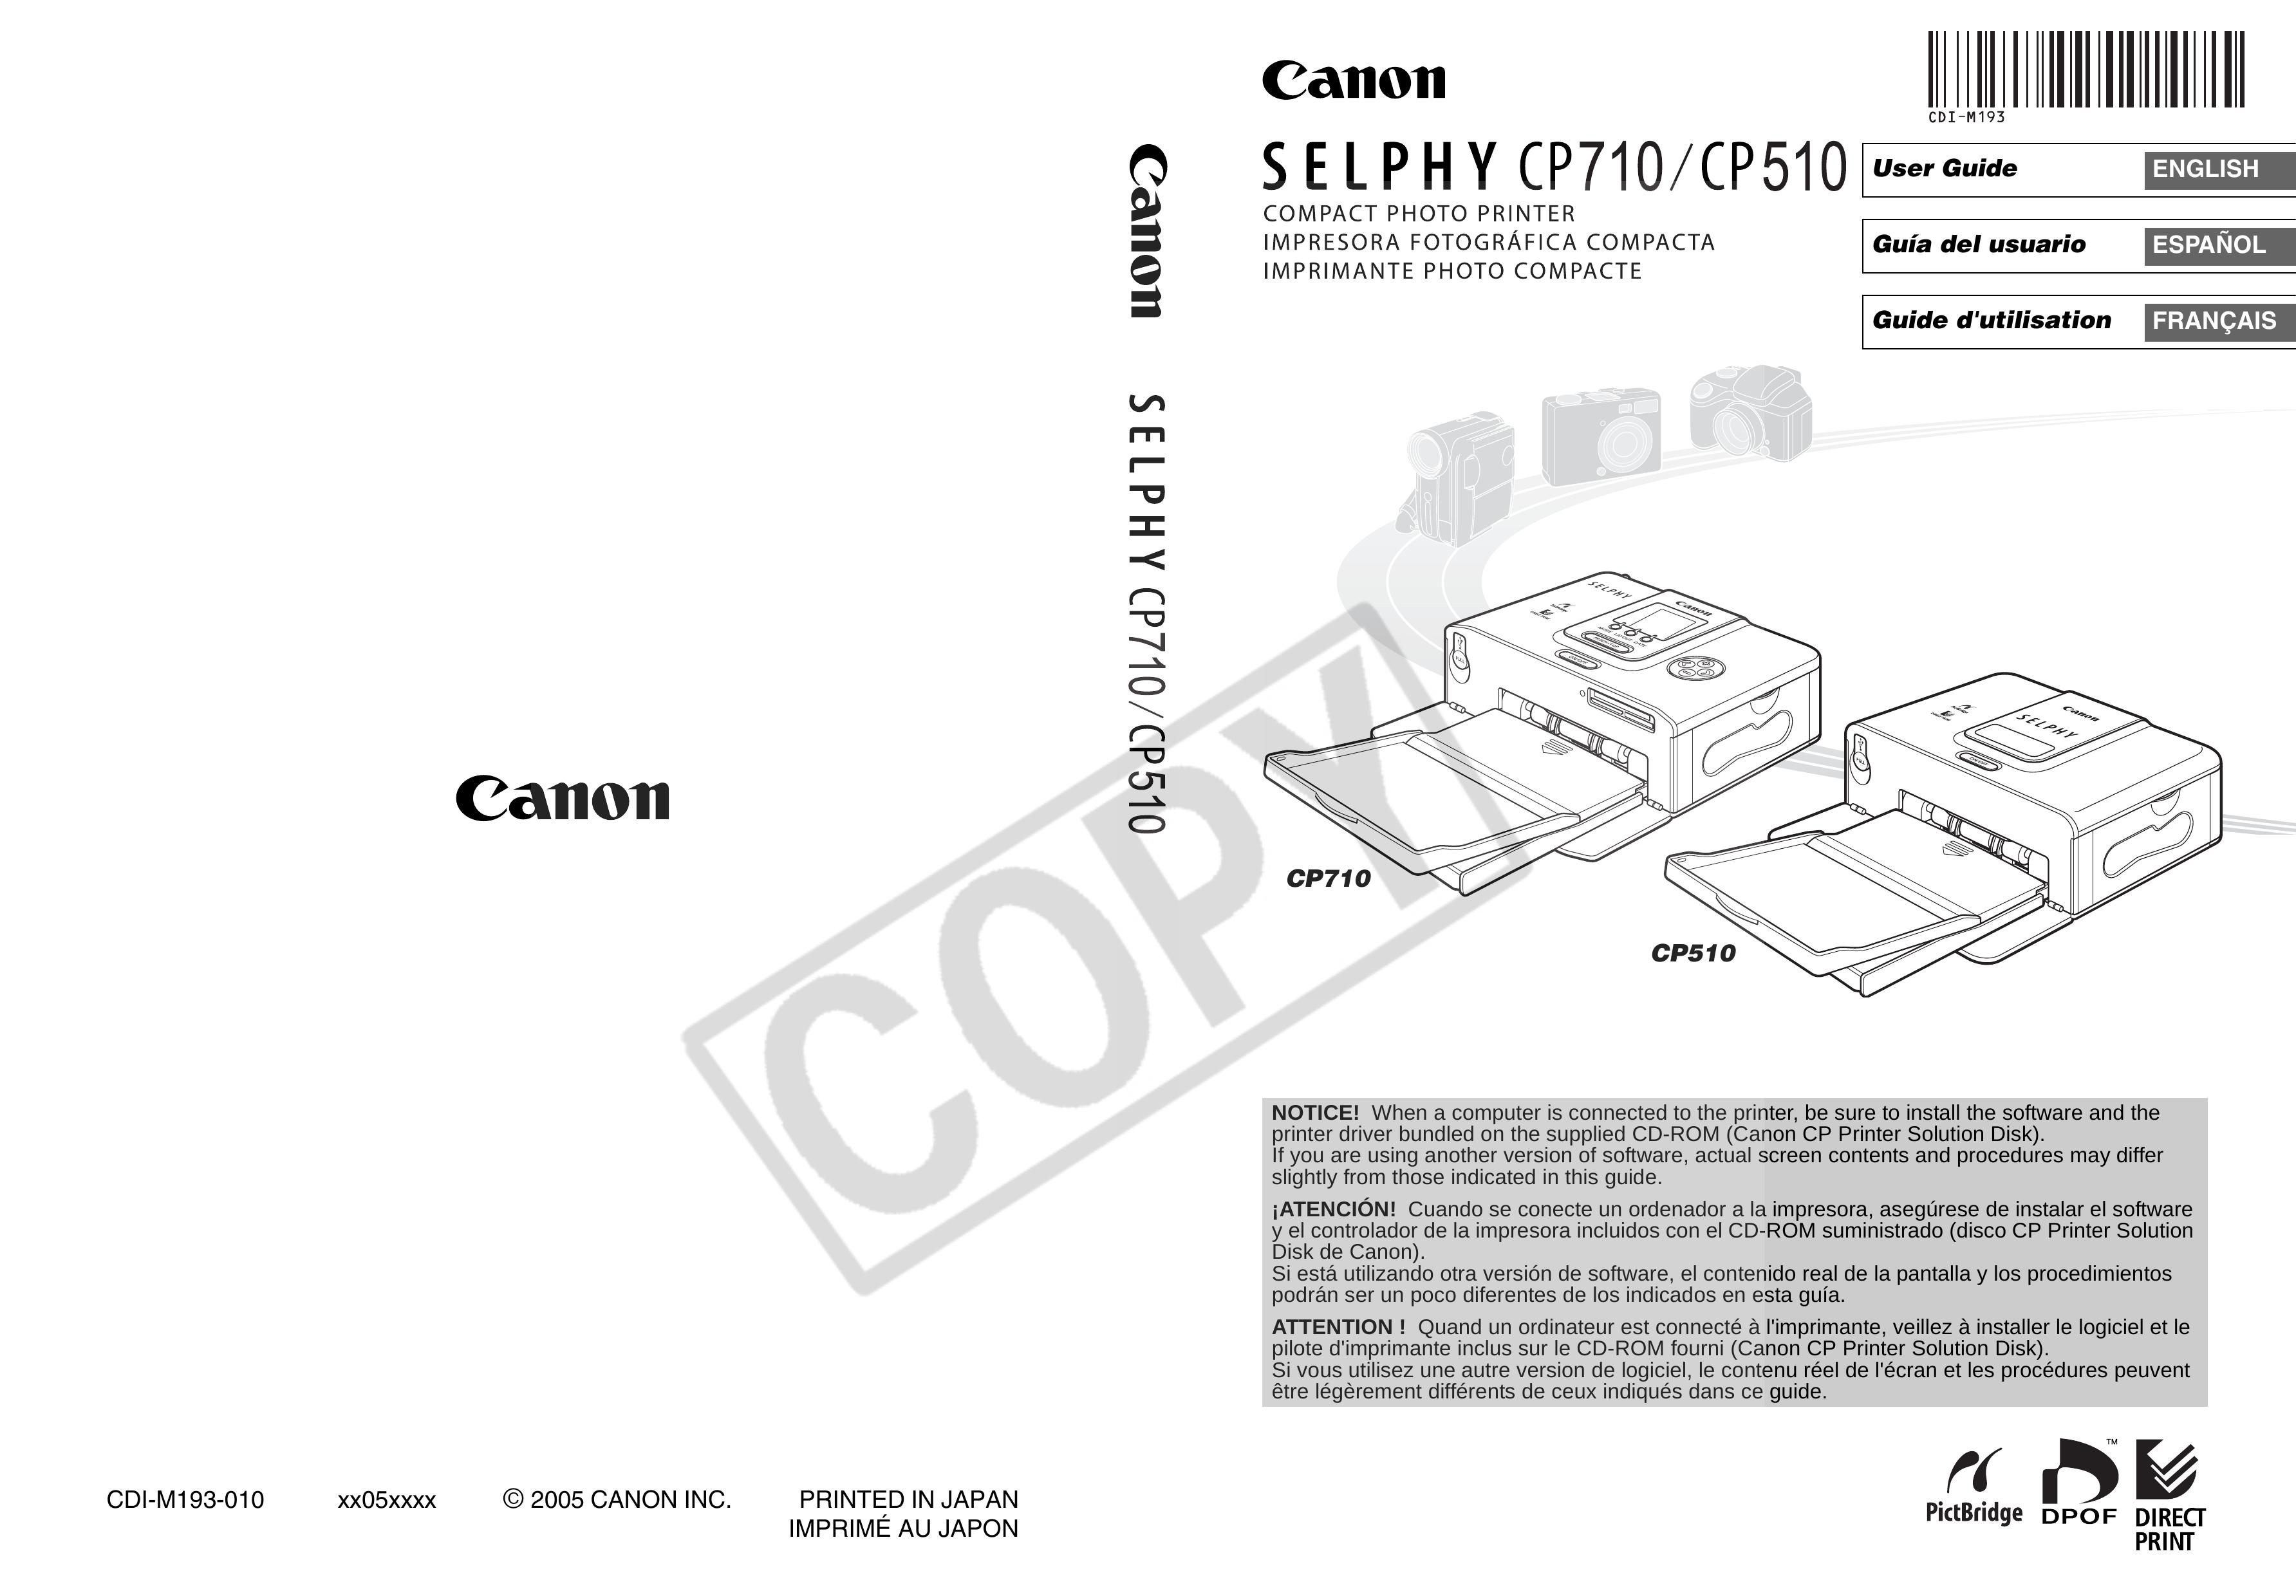 Canon CP710 Photo Printer User Manual